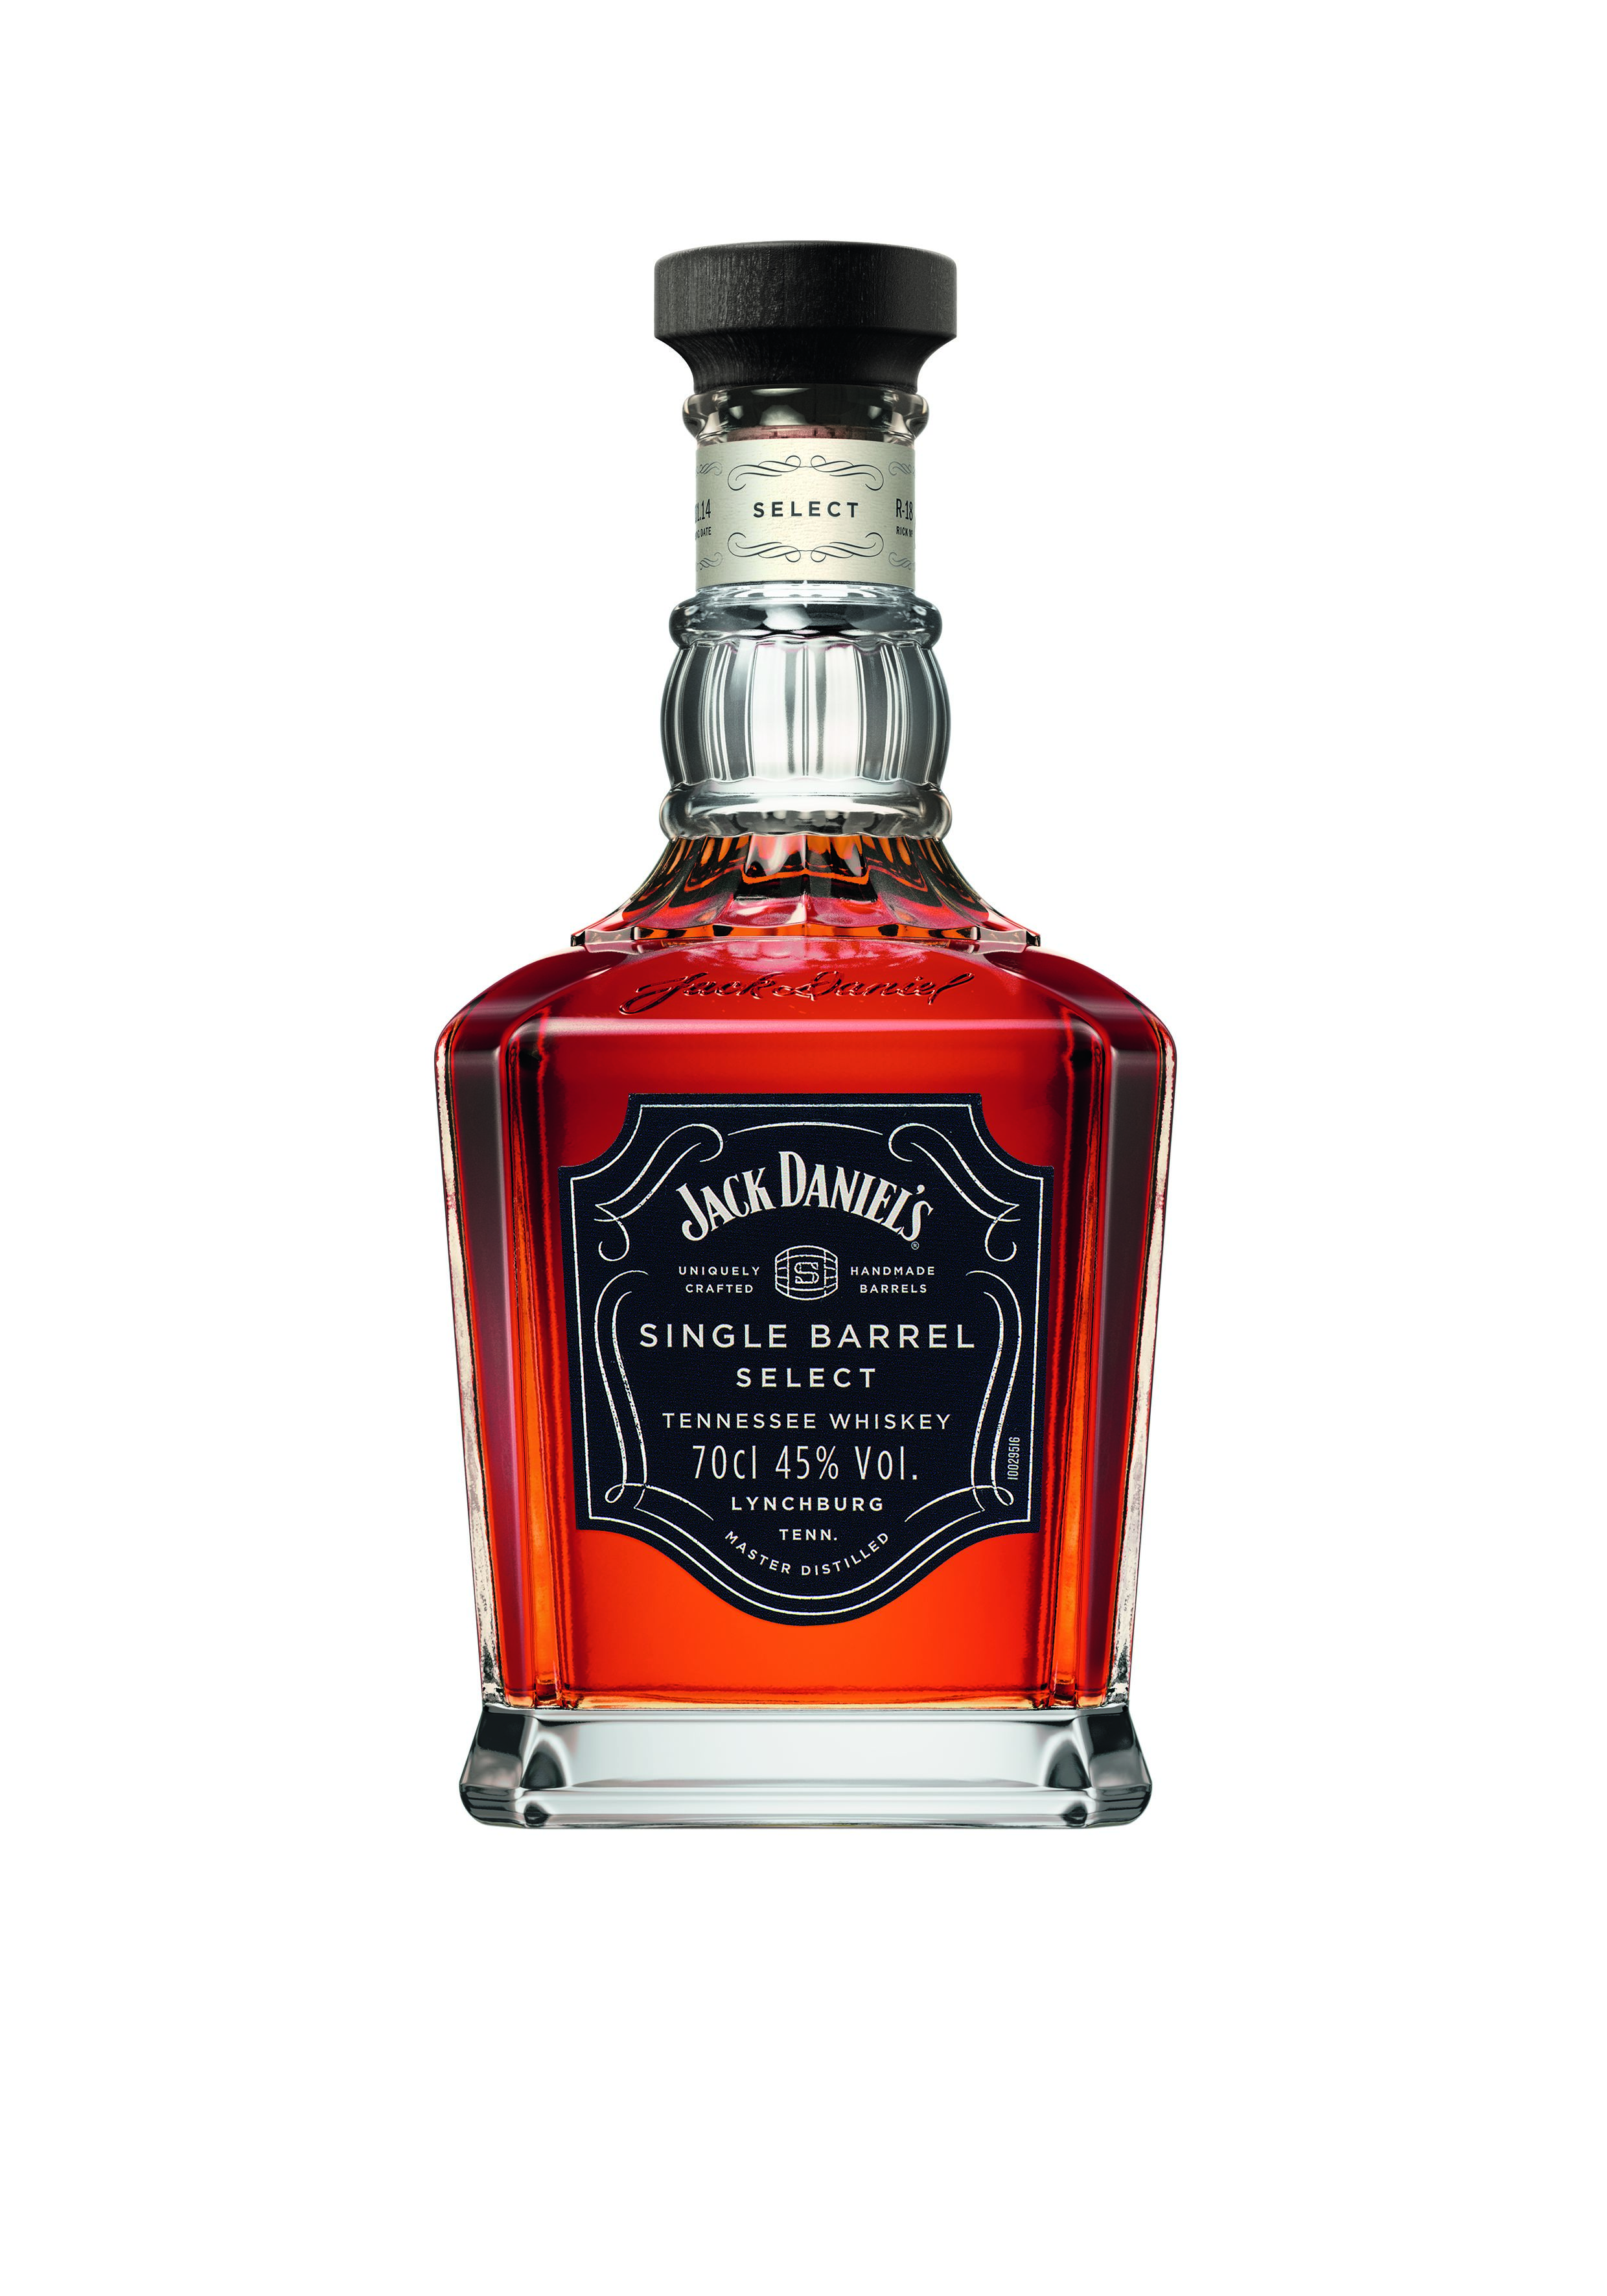 Jack Daniels Single Barrel Whiskey